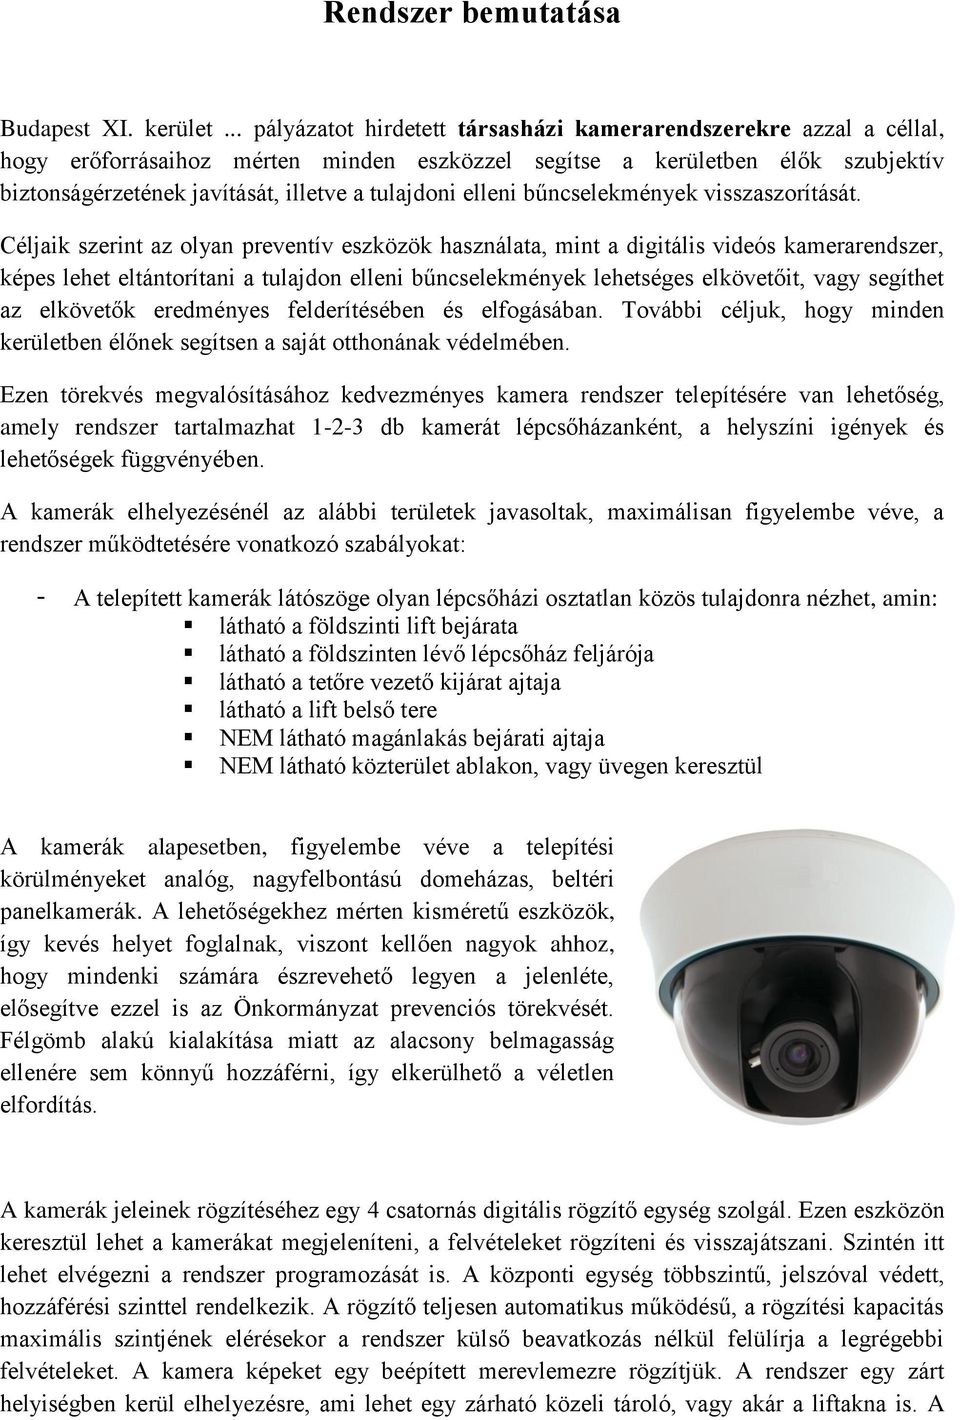 Rendszer bemutatása társasházi kamerarendszerekre - PDF Ingyenes letöltés